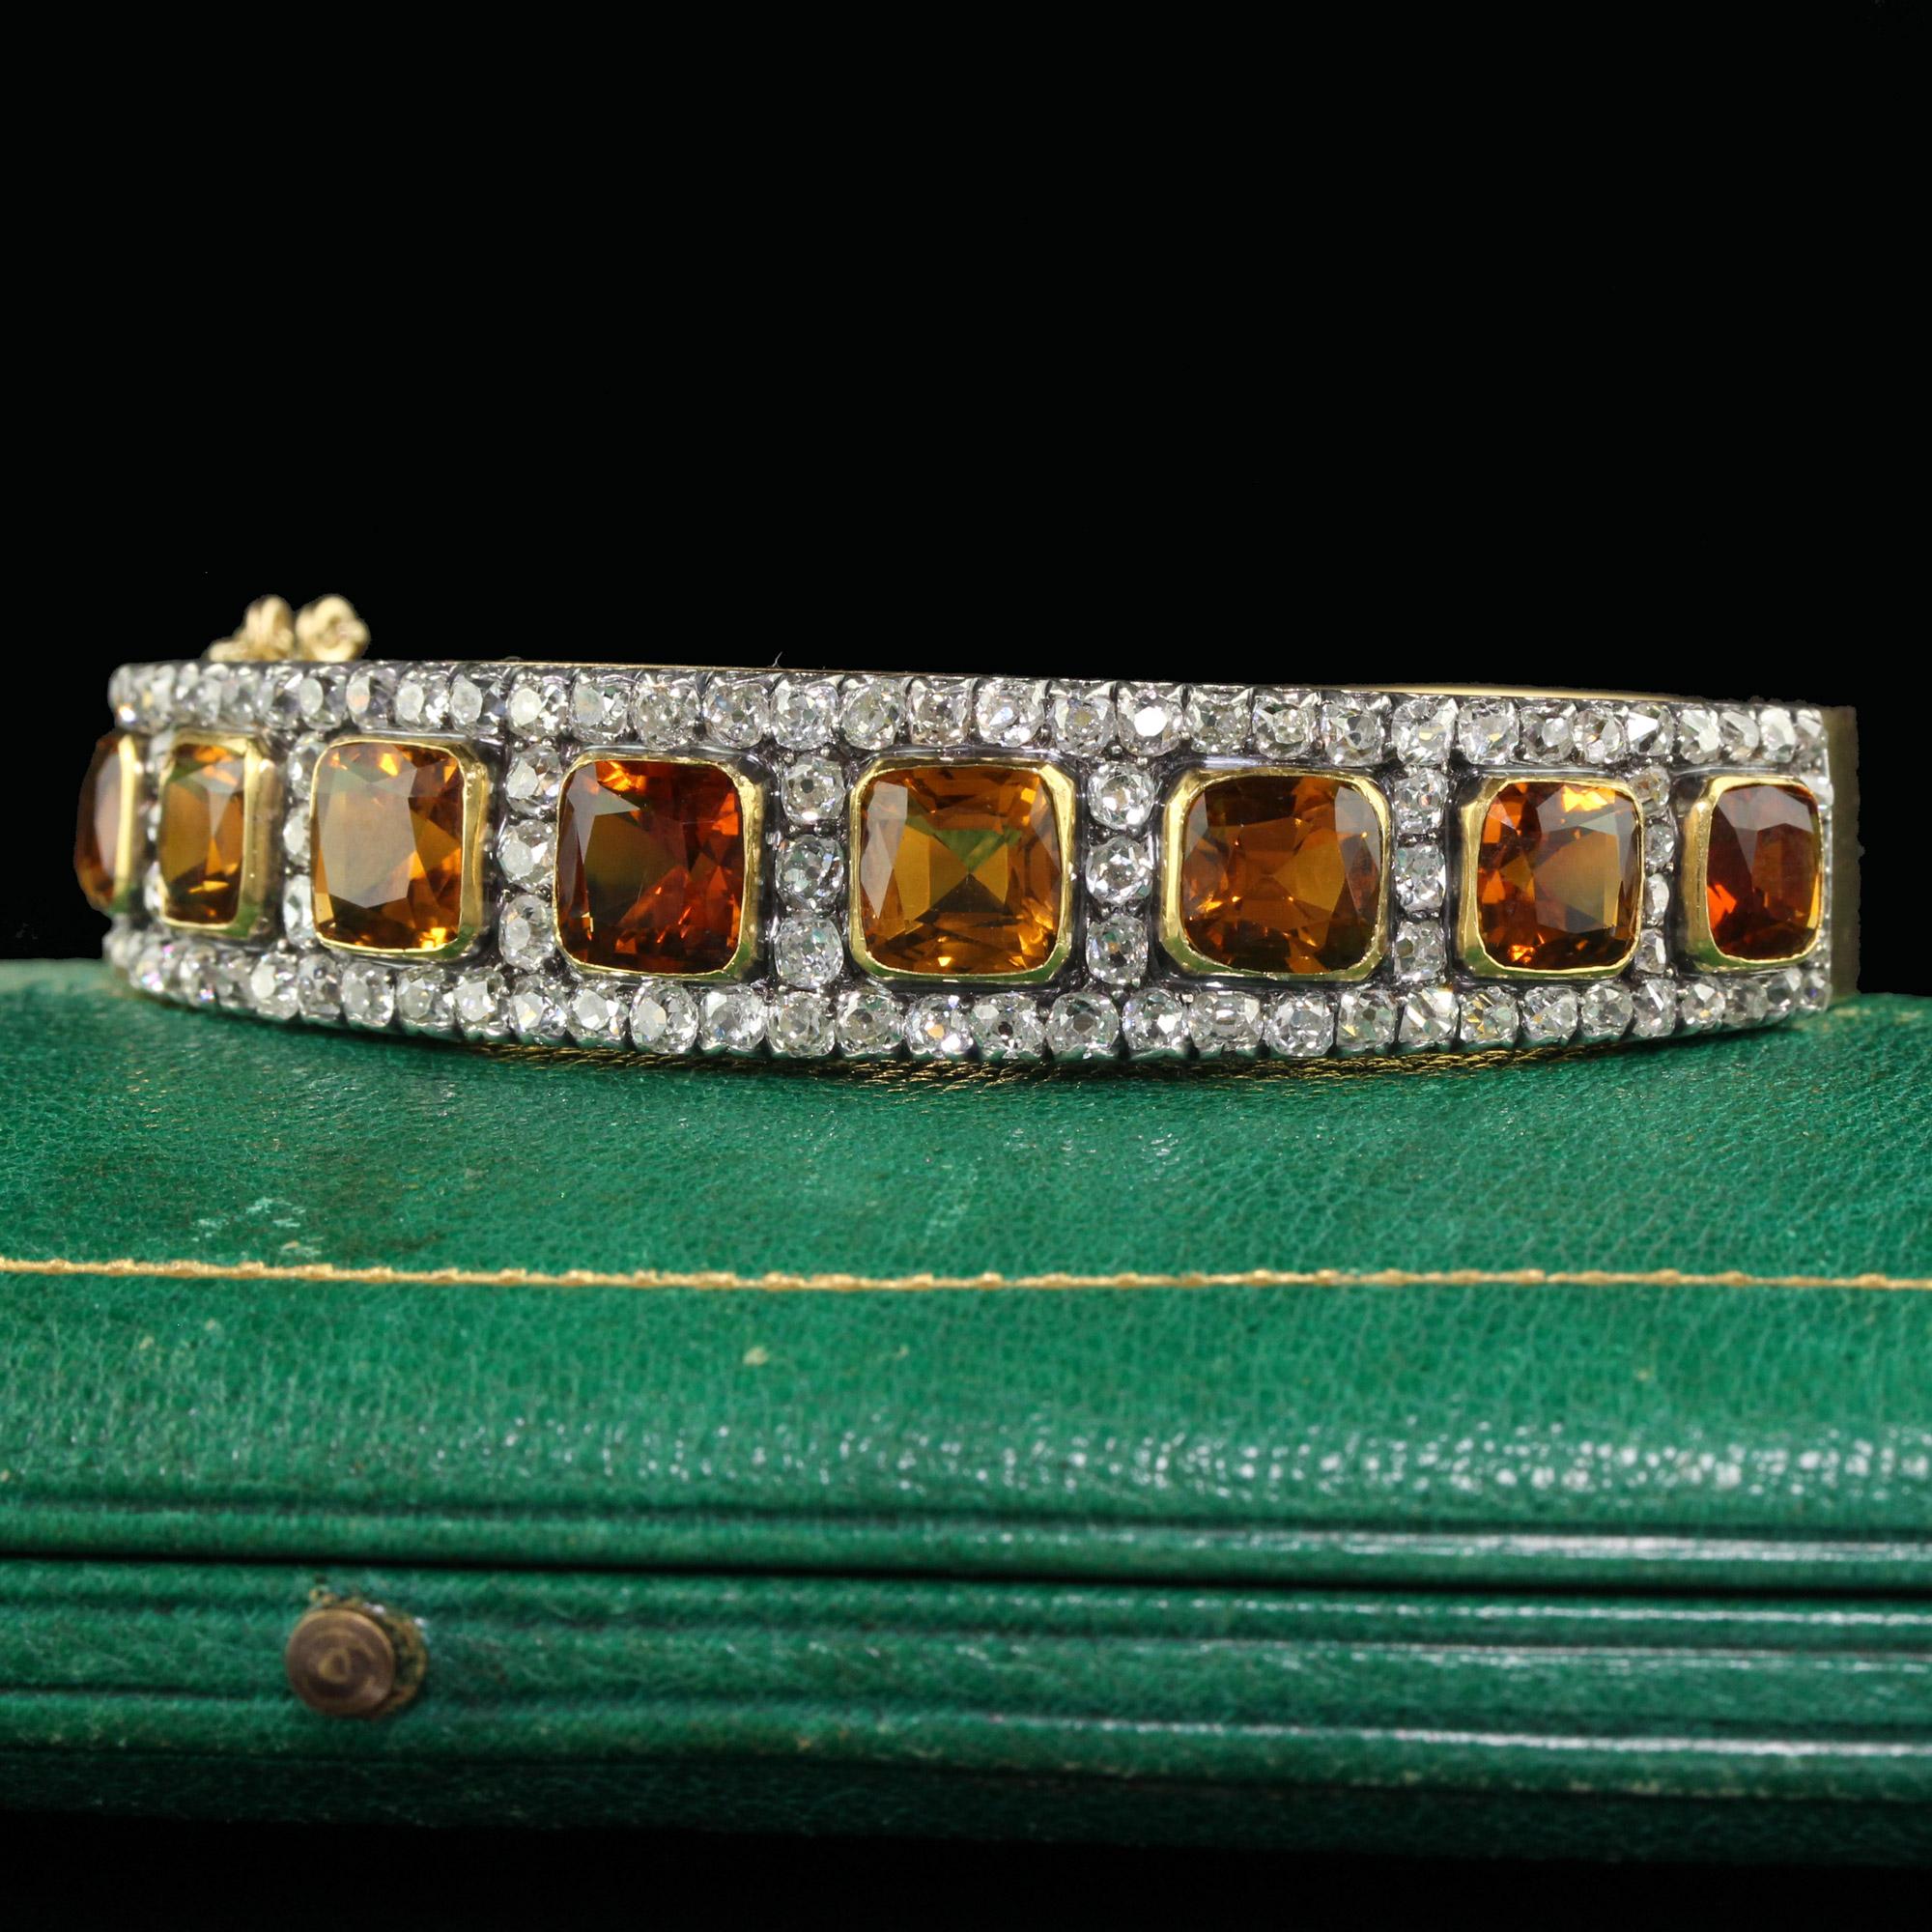 Magnifique bracelet victorien ancien en or jaune 18K et argent Old Mine Peruzzi Diamond and Citrine. Ce magnifique bracelet est réalisé en or jaune 18 carats et en argent. Le haut du bracelet est orné de citrines naturelles et de rangées de diamants